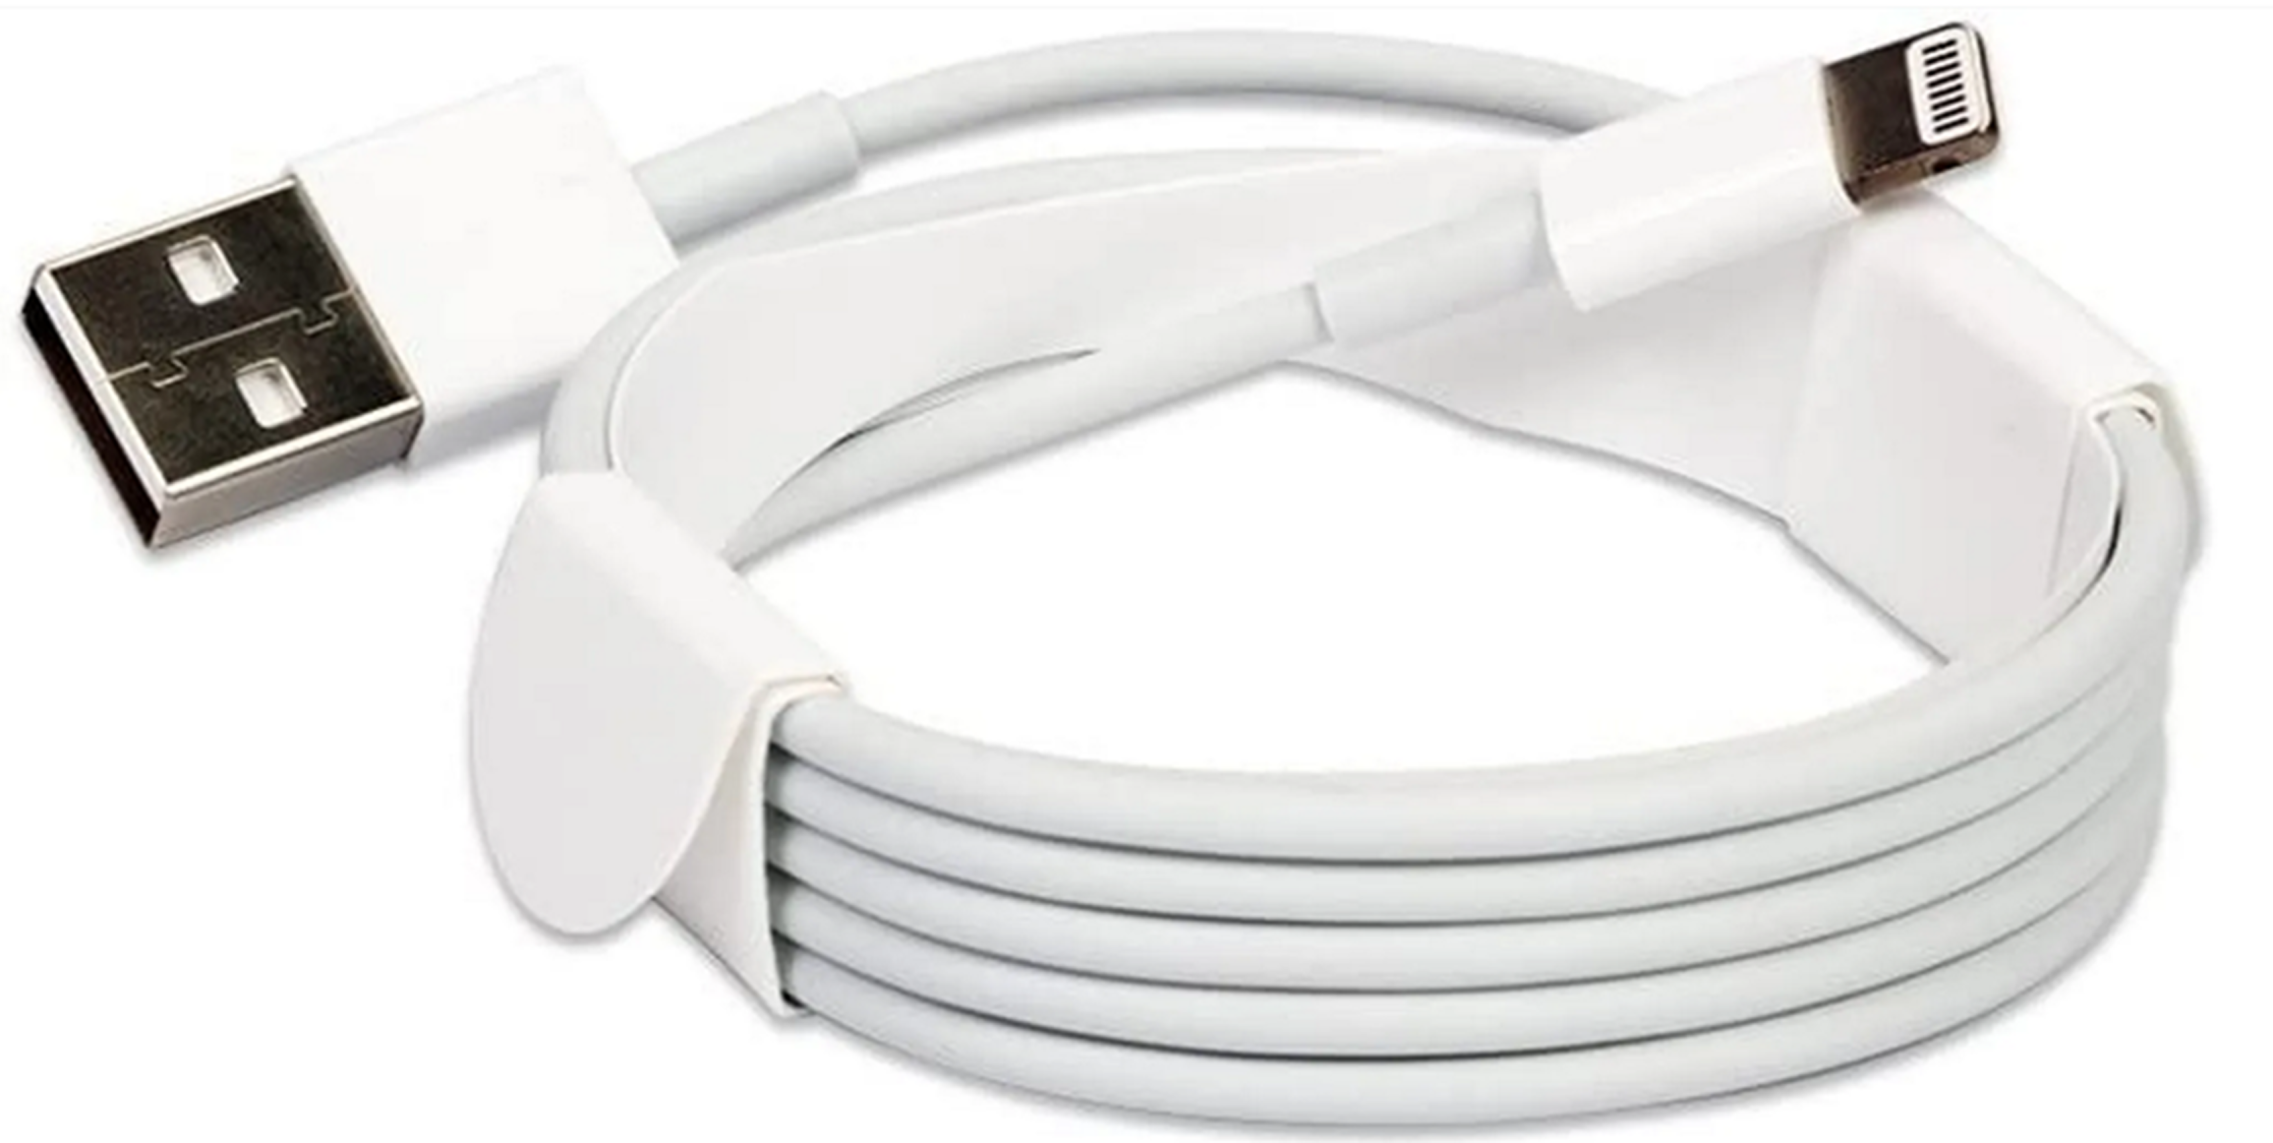 10x iPhone XS Max Lightning auf USB Kabel 2m Ladekabel